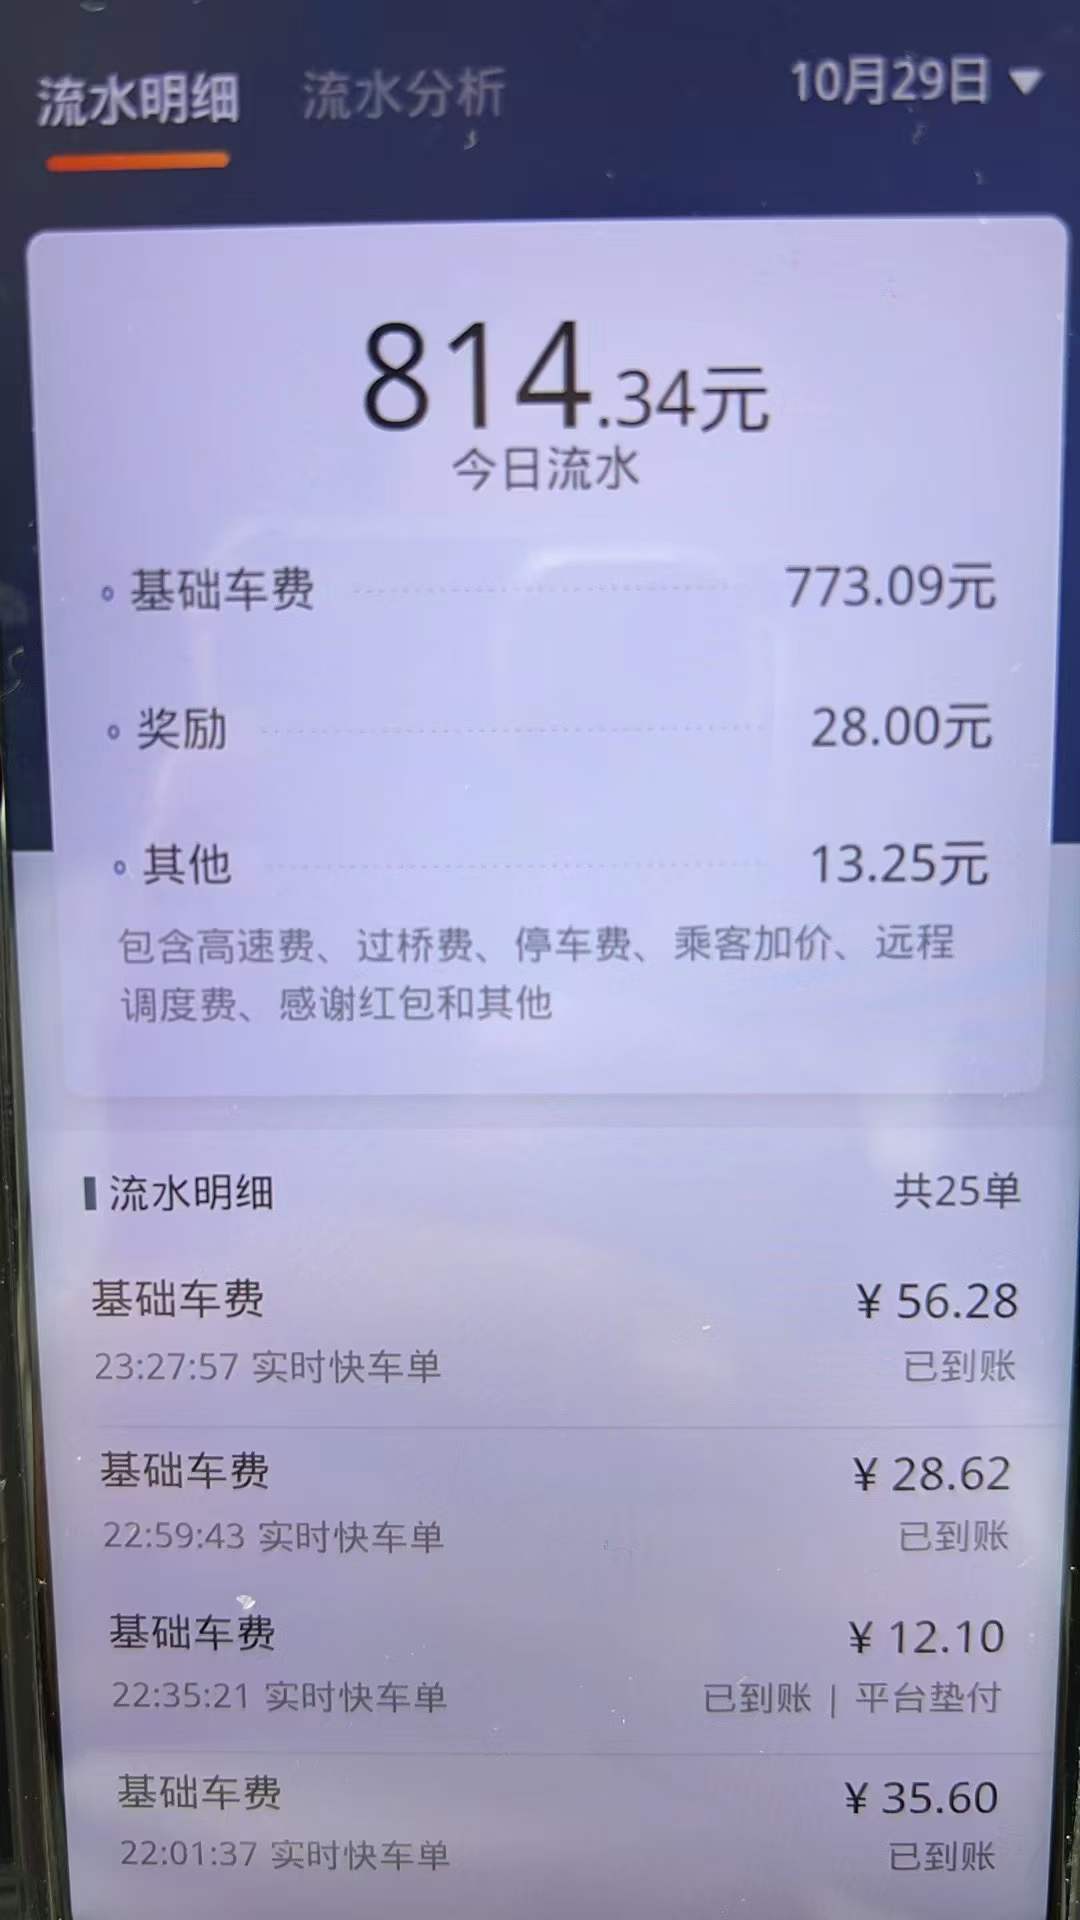 主变量上海网约车起步价热点新闻